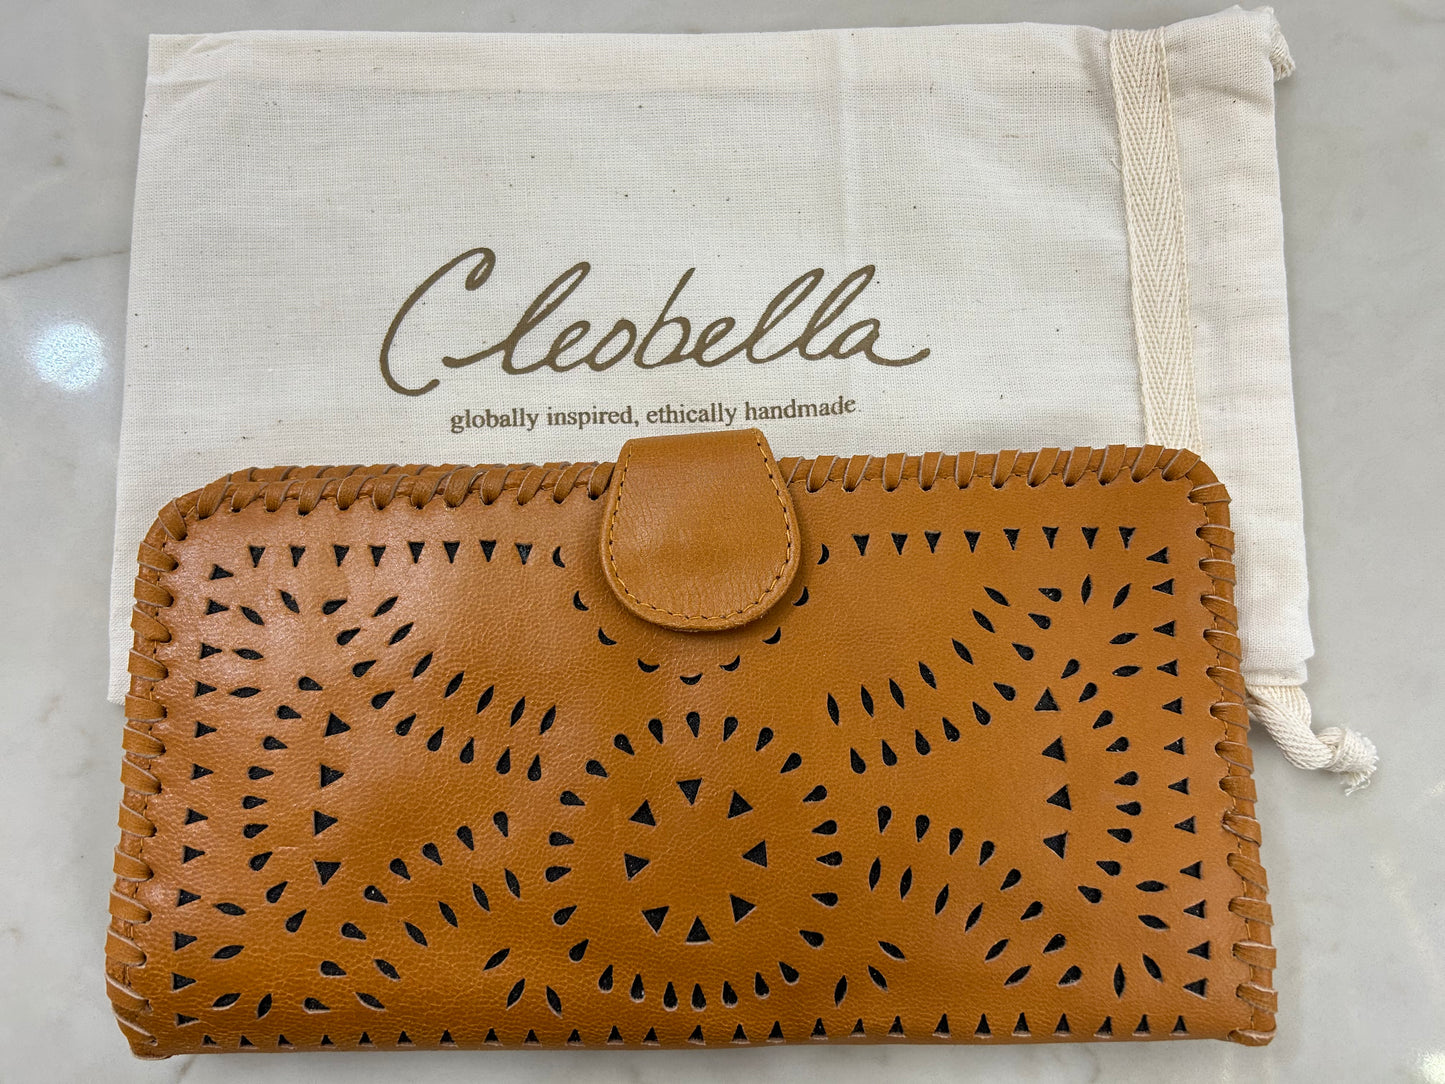 Cleobelle Leather Wallet